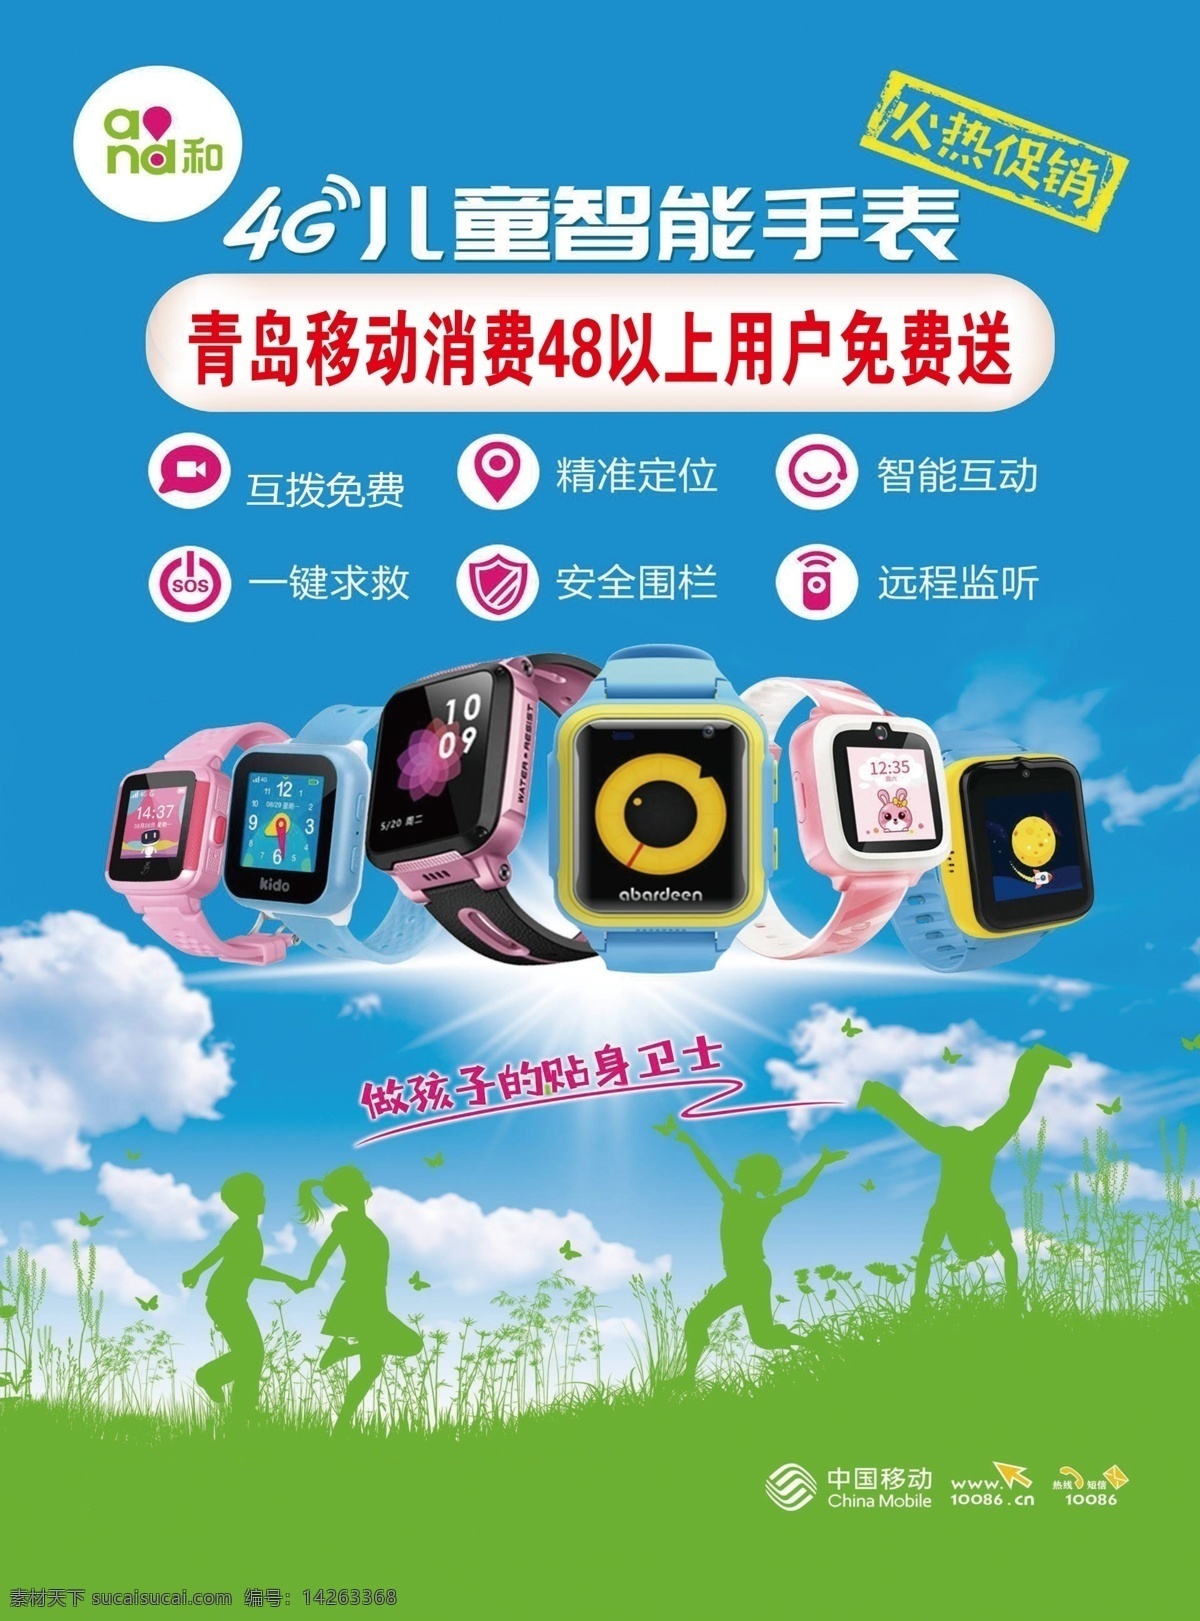 儿童 手表 宣传单 中国移动手表 儿童手表 手表宣传单 儿童宣传单 中国移动宣传